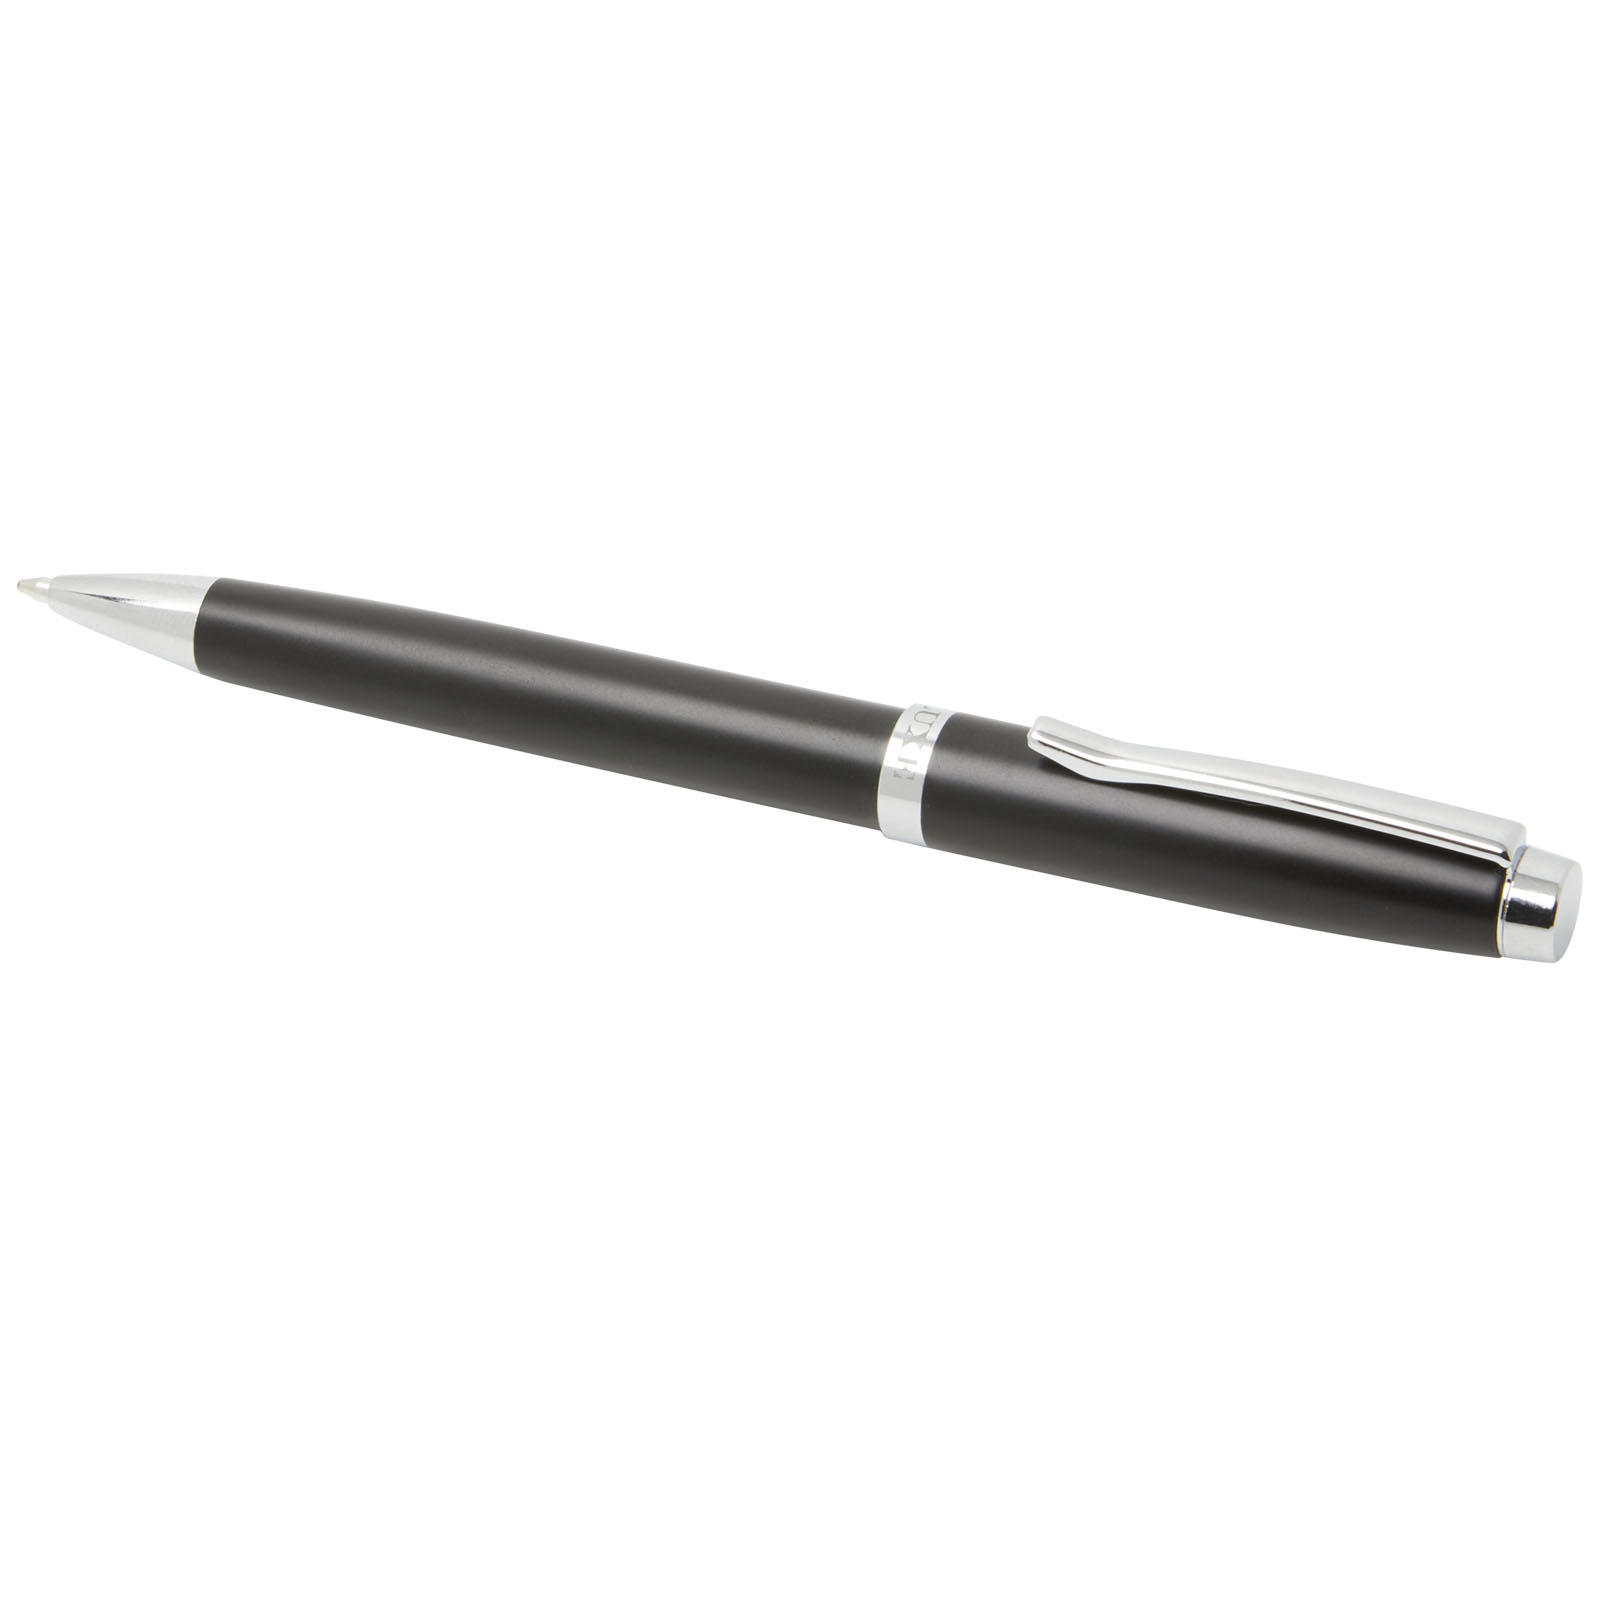 Advertising Ballpoint Pens - Vivace ballpoint pen  - 3